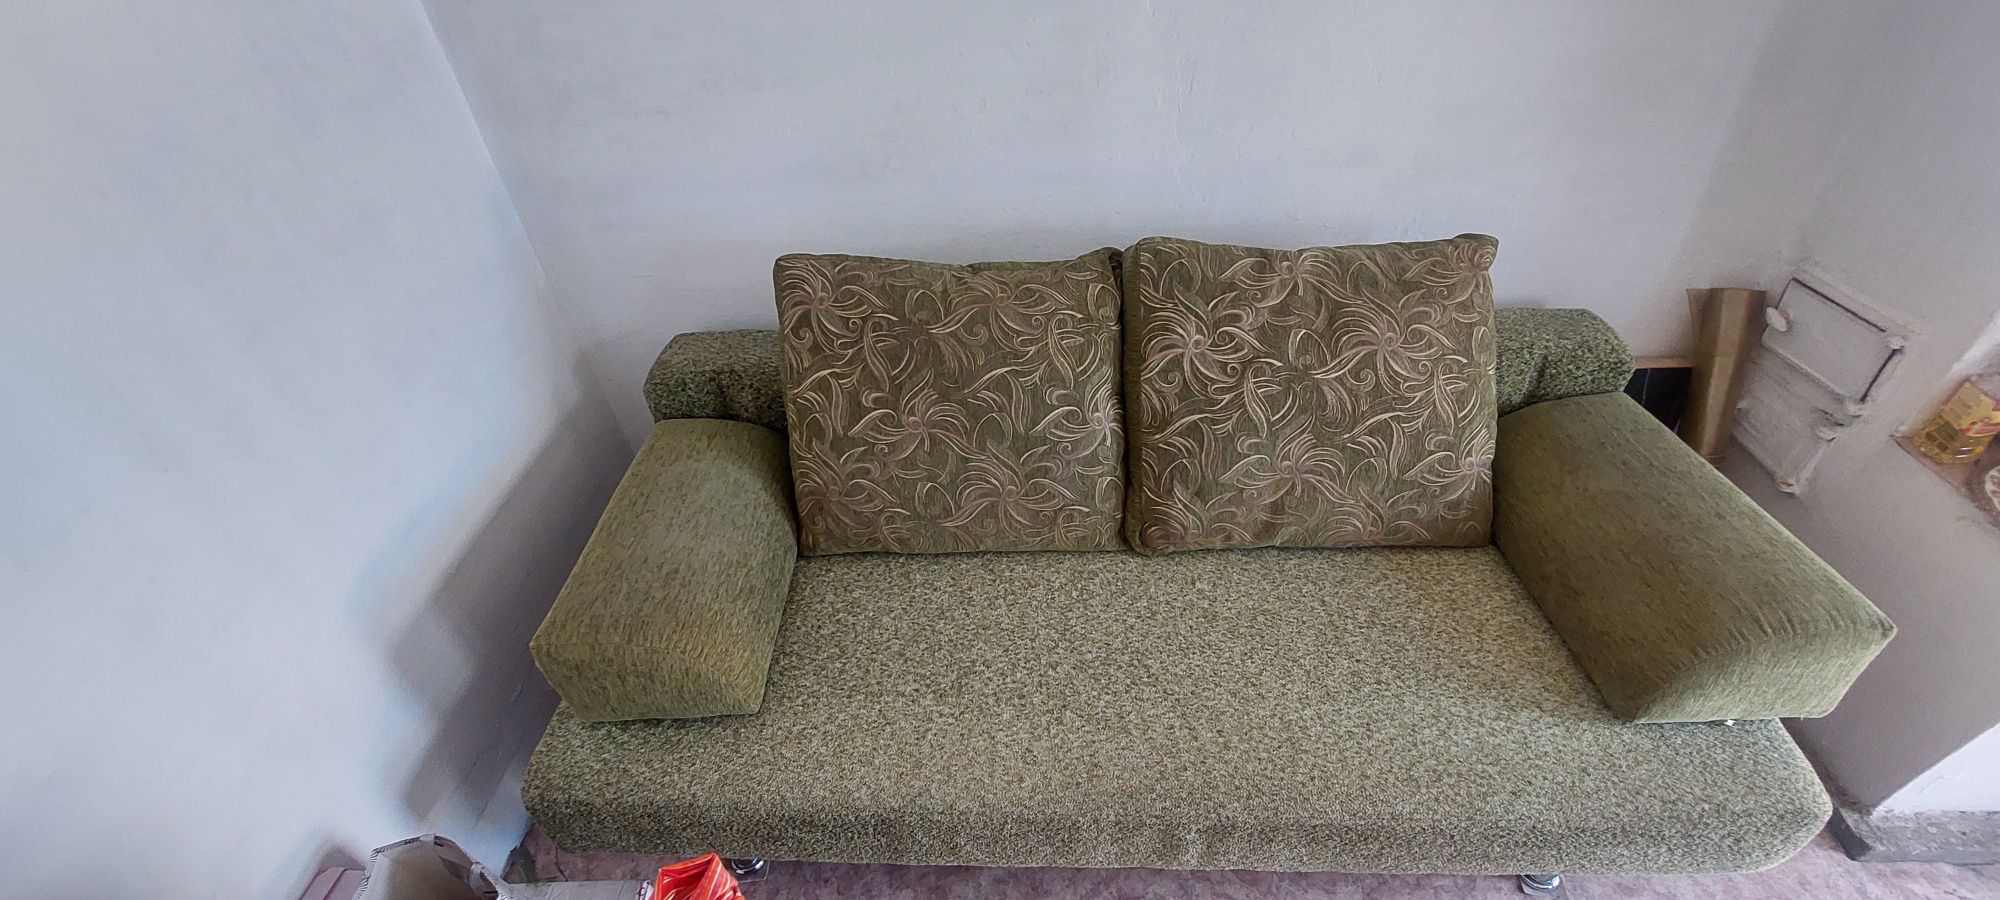 Продам диван для гостиной в хорошем состоянии